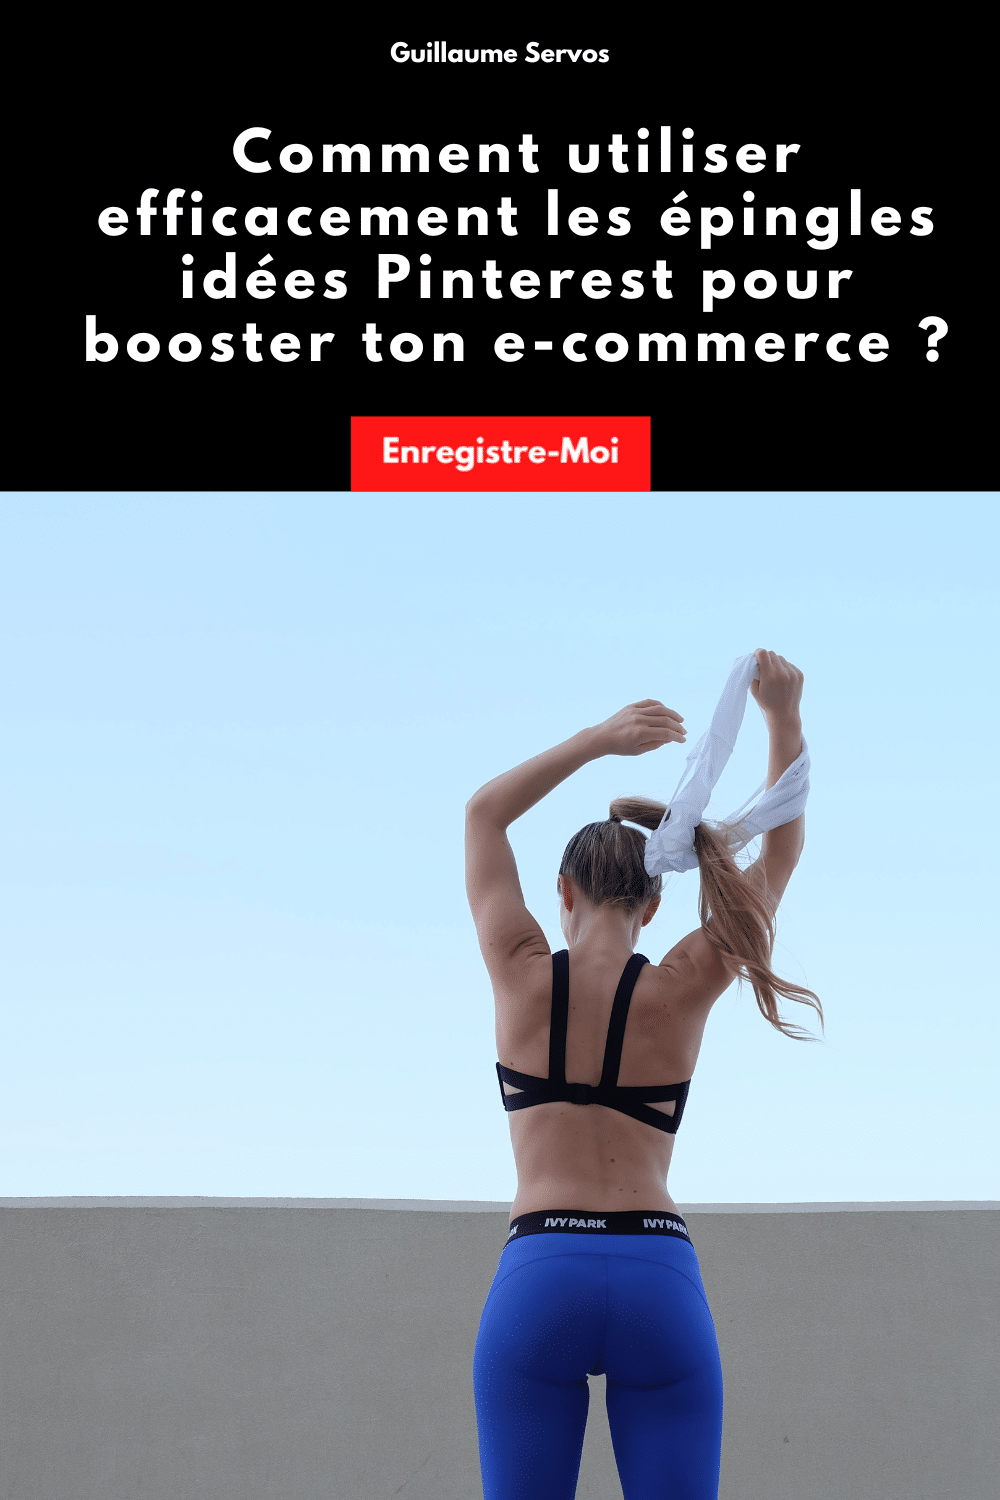 Comment utiliser efficacement les épingles idées Pinterest pour booster ton e-commerce ?